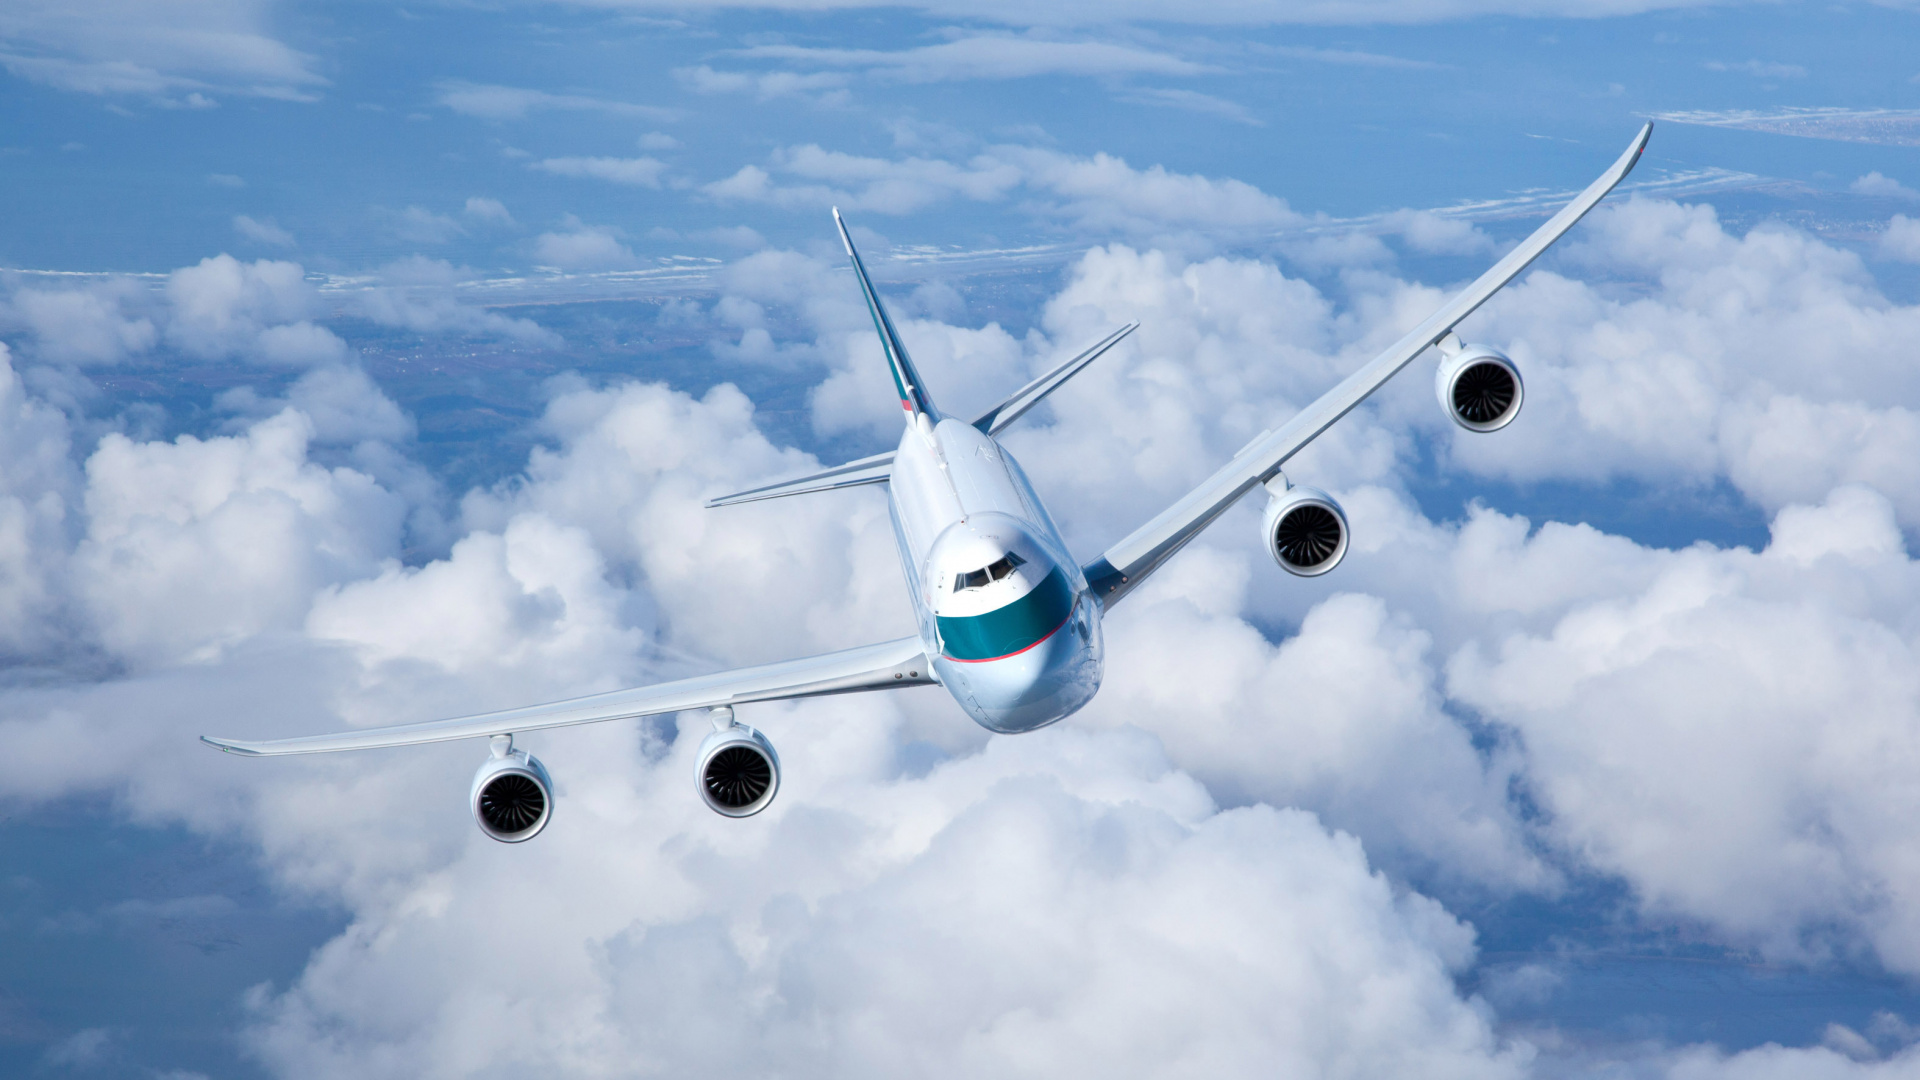 波音747, 航空公司, 客机, 空中旅行, 航空 壁纸 1920x1080 允许